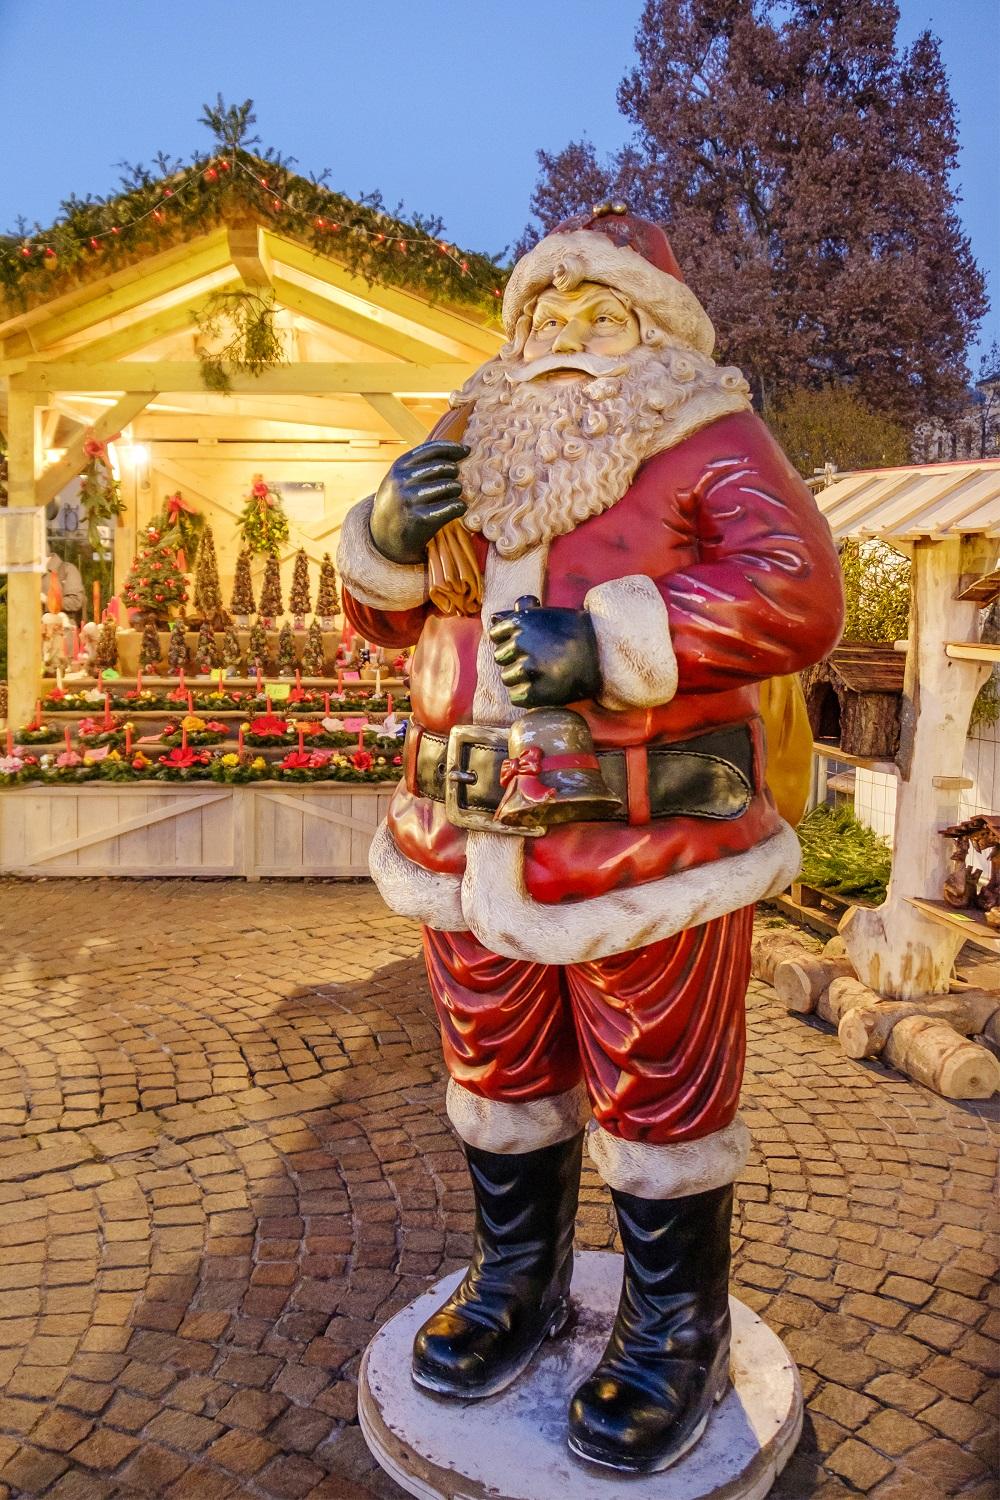 Hans Christian Andersen Christmas Market - Denmark